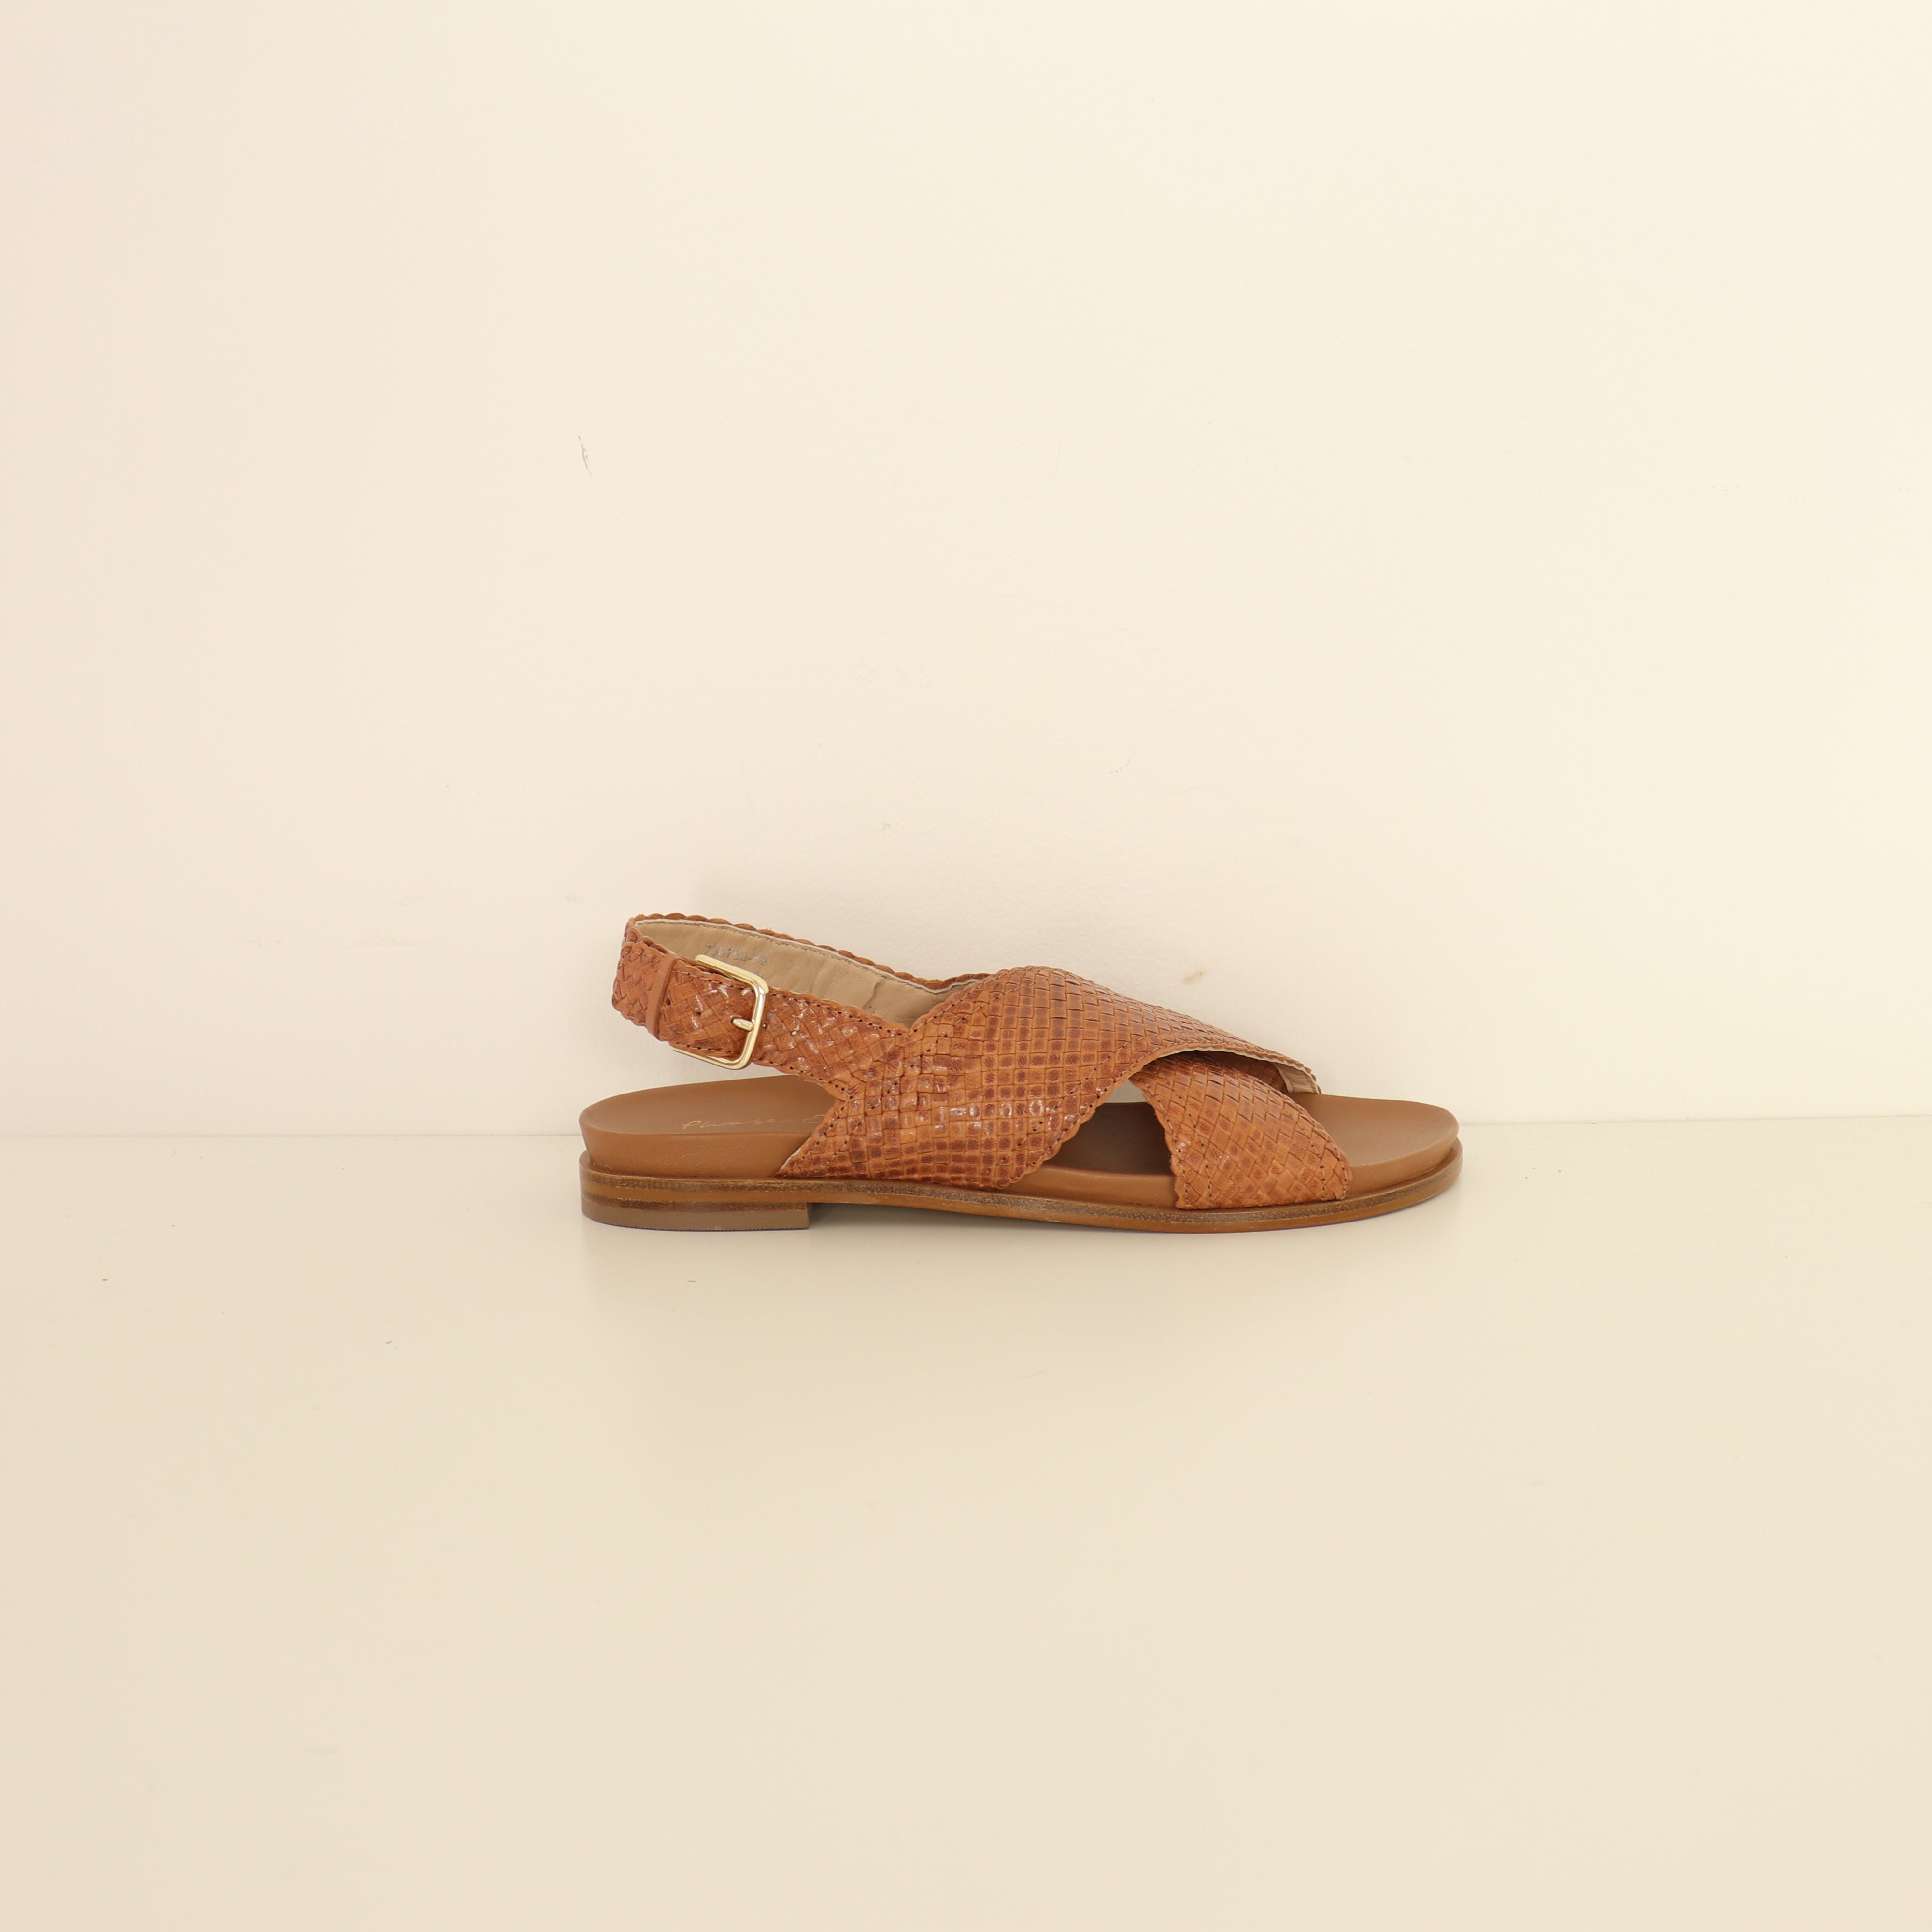 Sandals, Size 39